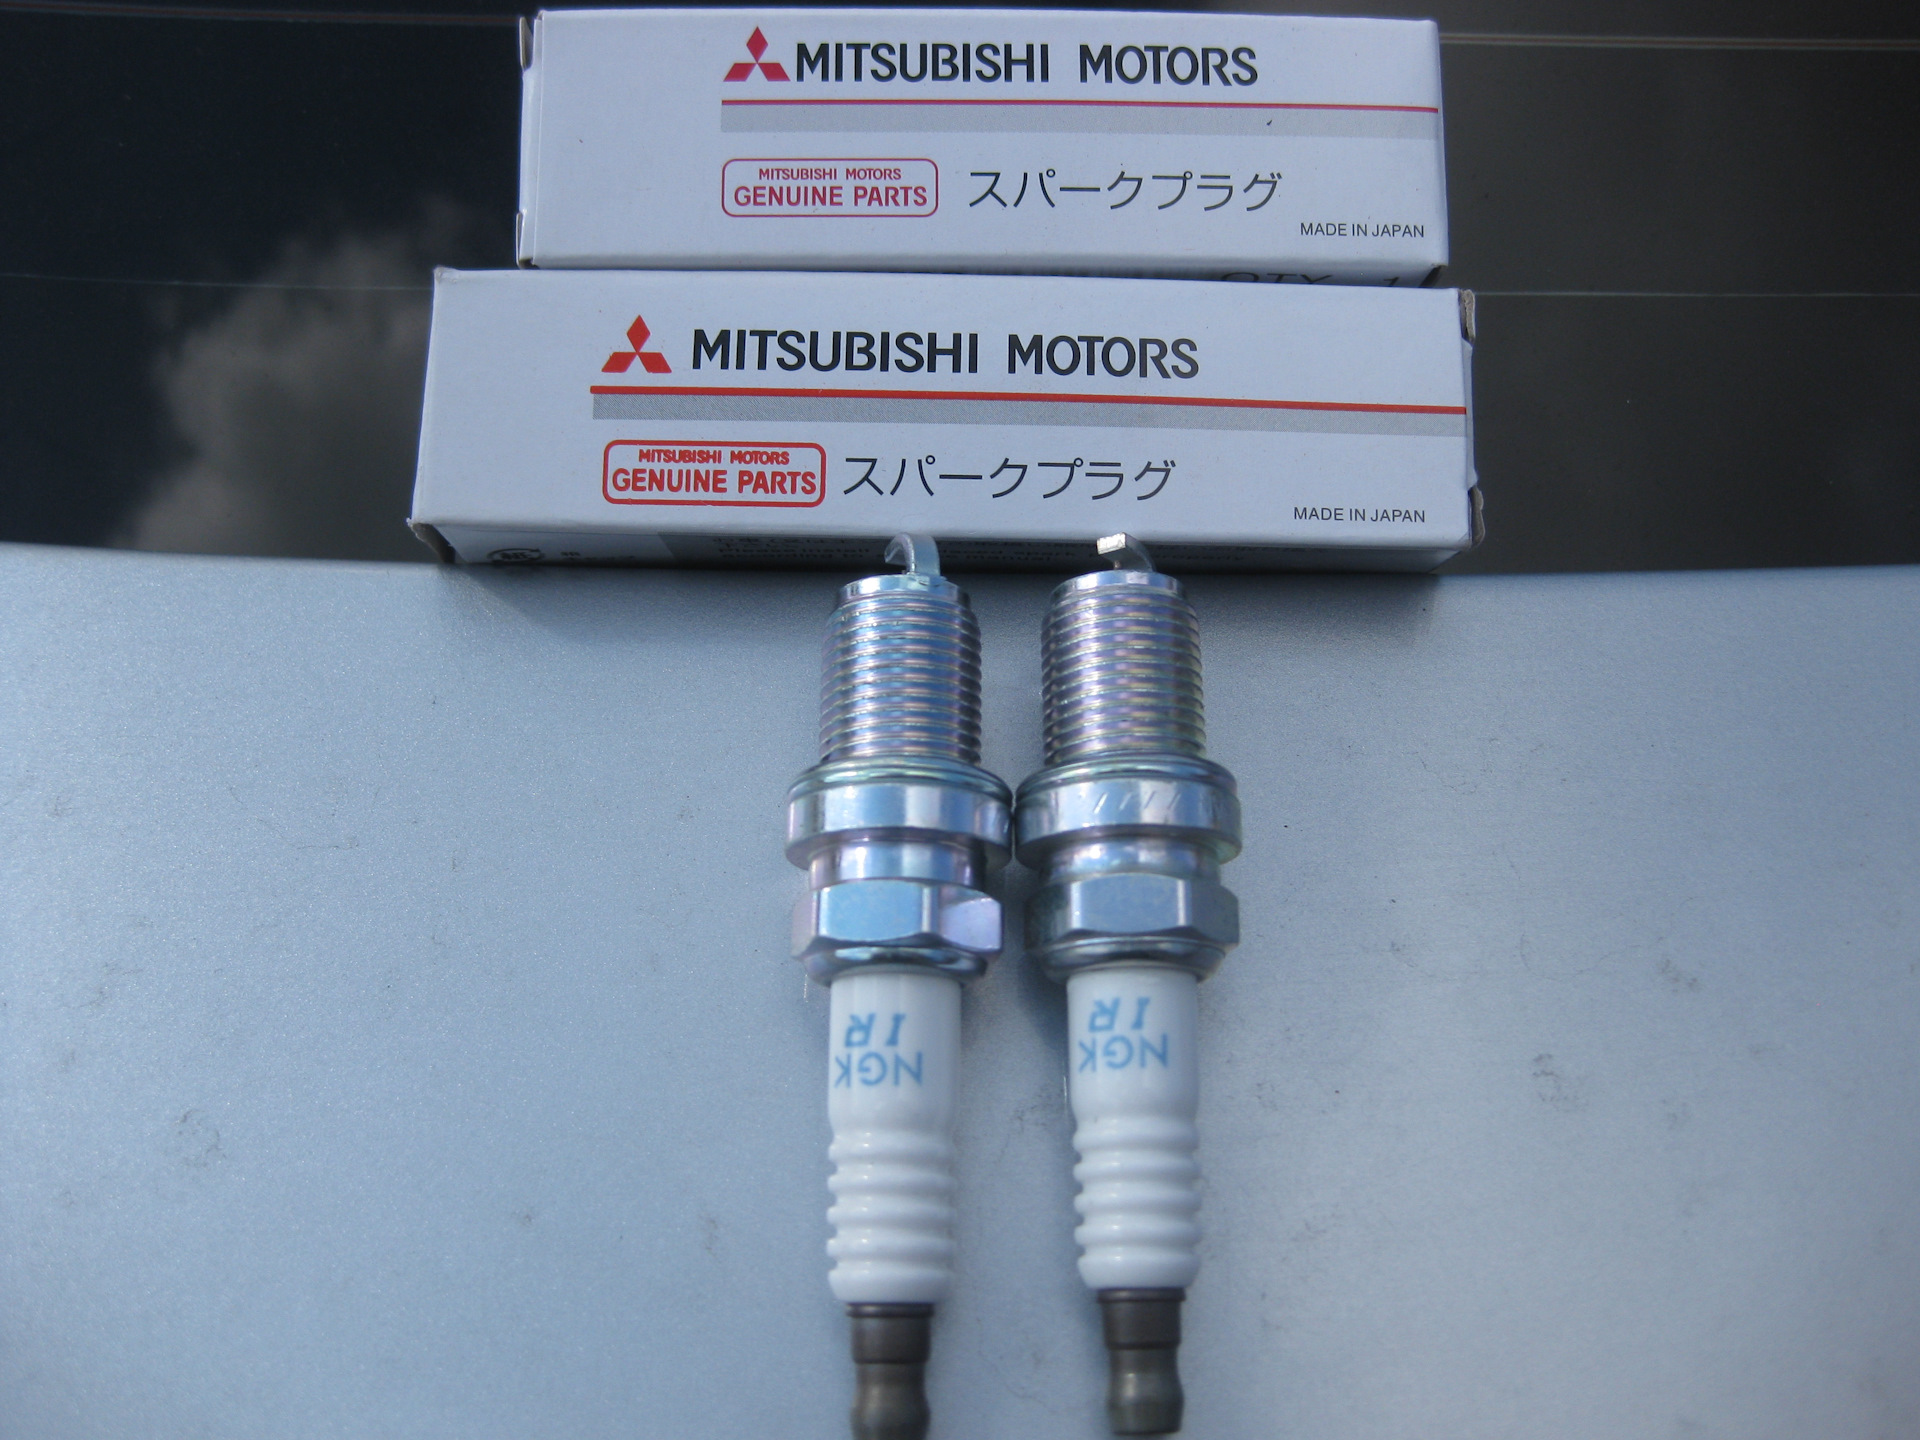 Свеча зажигания митсубиси. Mitsubishi mn163236. Mitsubishi mn163236 свеча зажигания. Свечи на Mitsubishi Lancer 10 1.8. Свечи зажигания (4шт) Mitsubishi Lancer 3 mn163236 / mn163807.